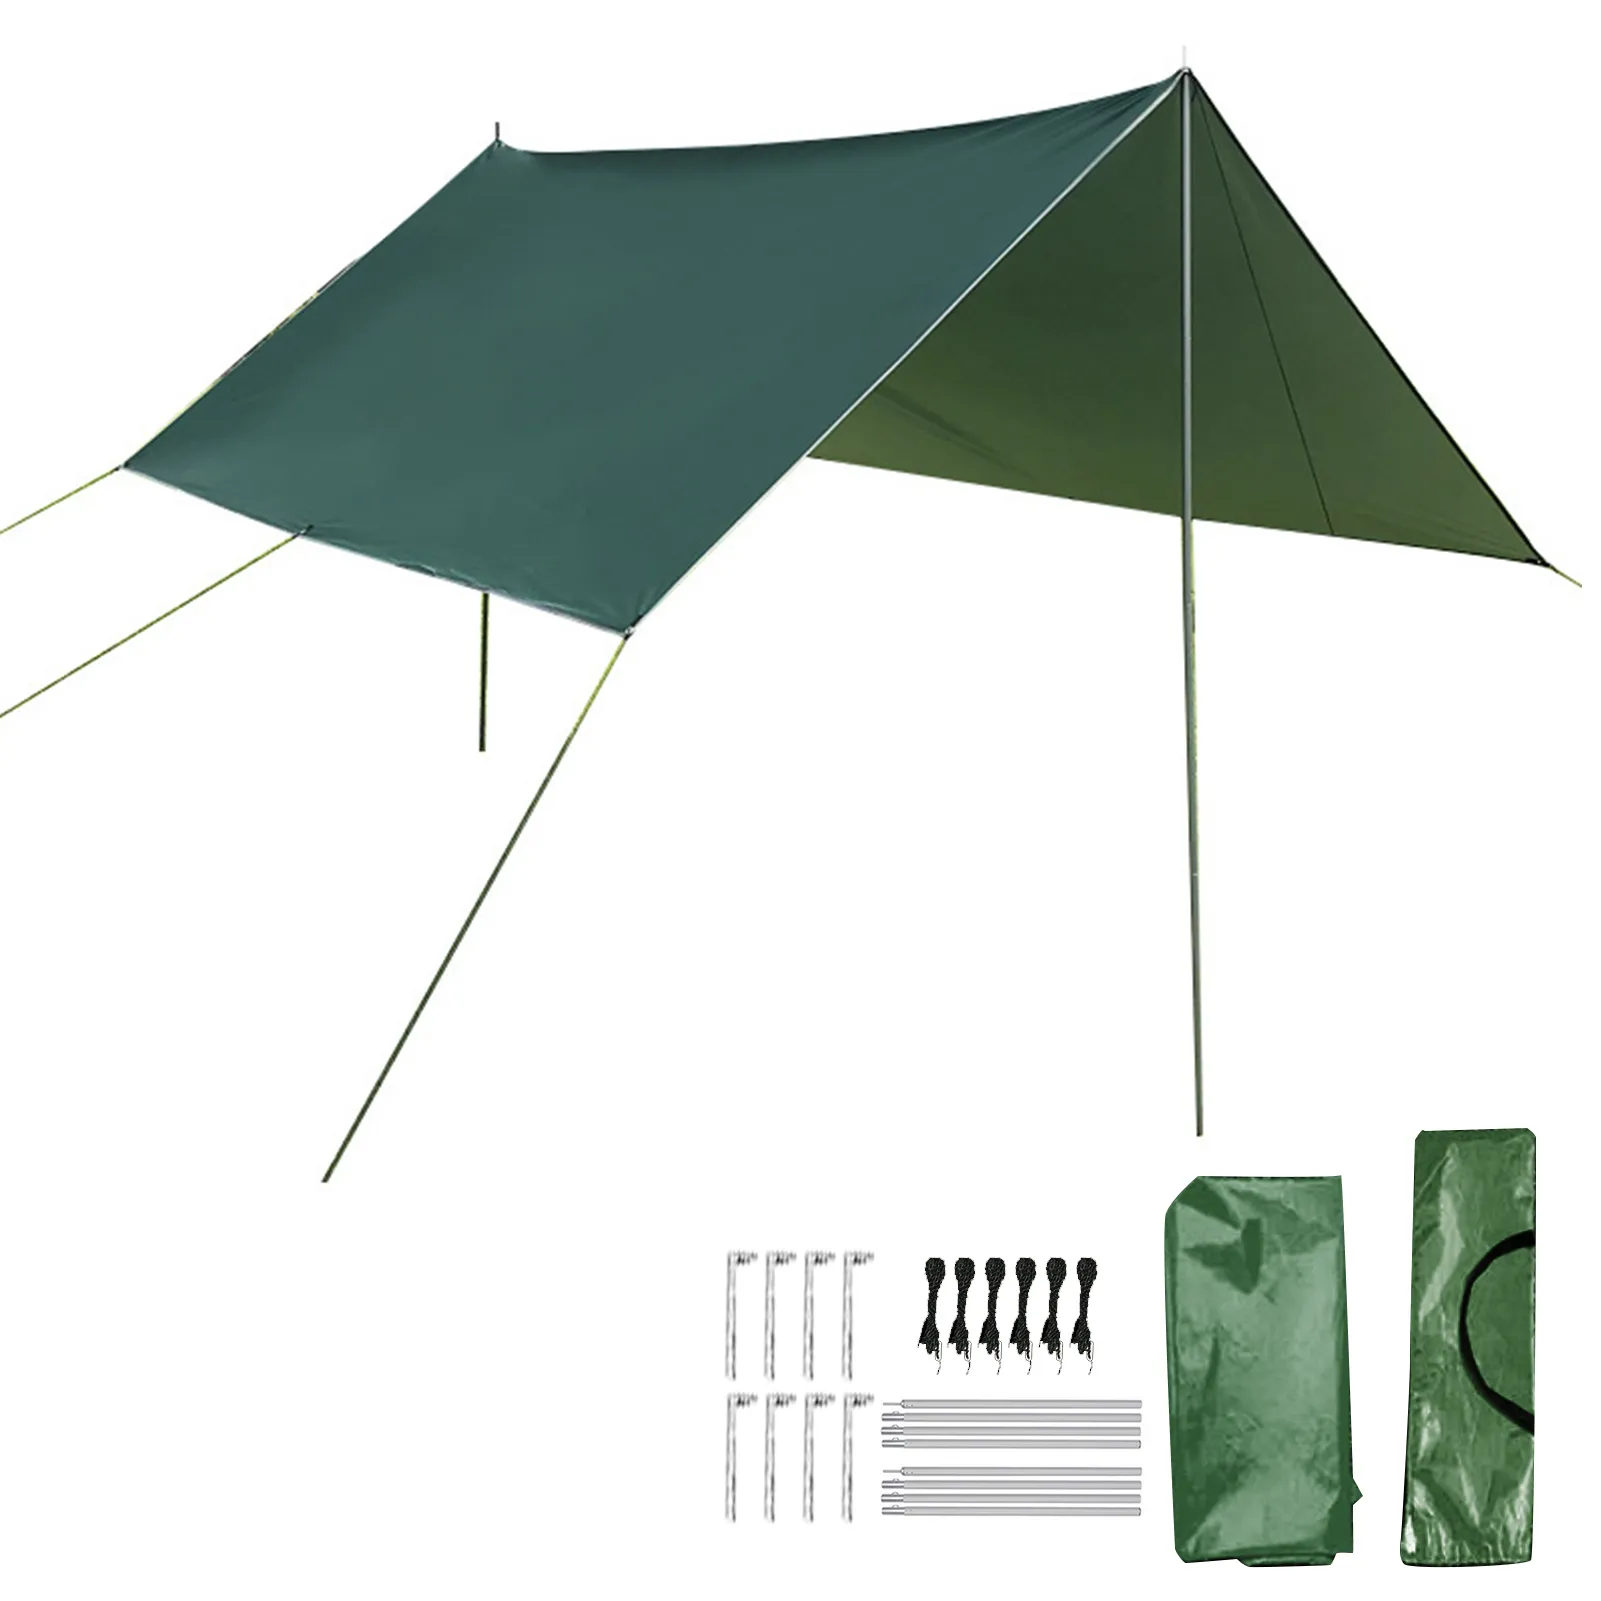 Práctica tienda de campaña portátil para acampar al aire libre, sombrilla impermeable duradera para playa, jardín, accesorio turístico de fácil instalación